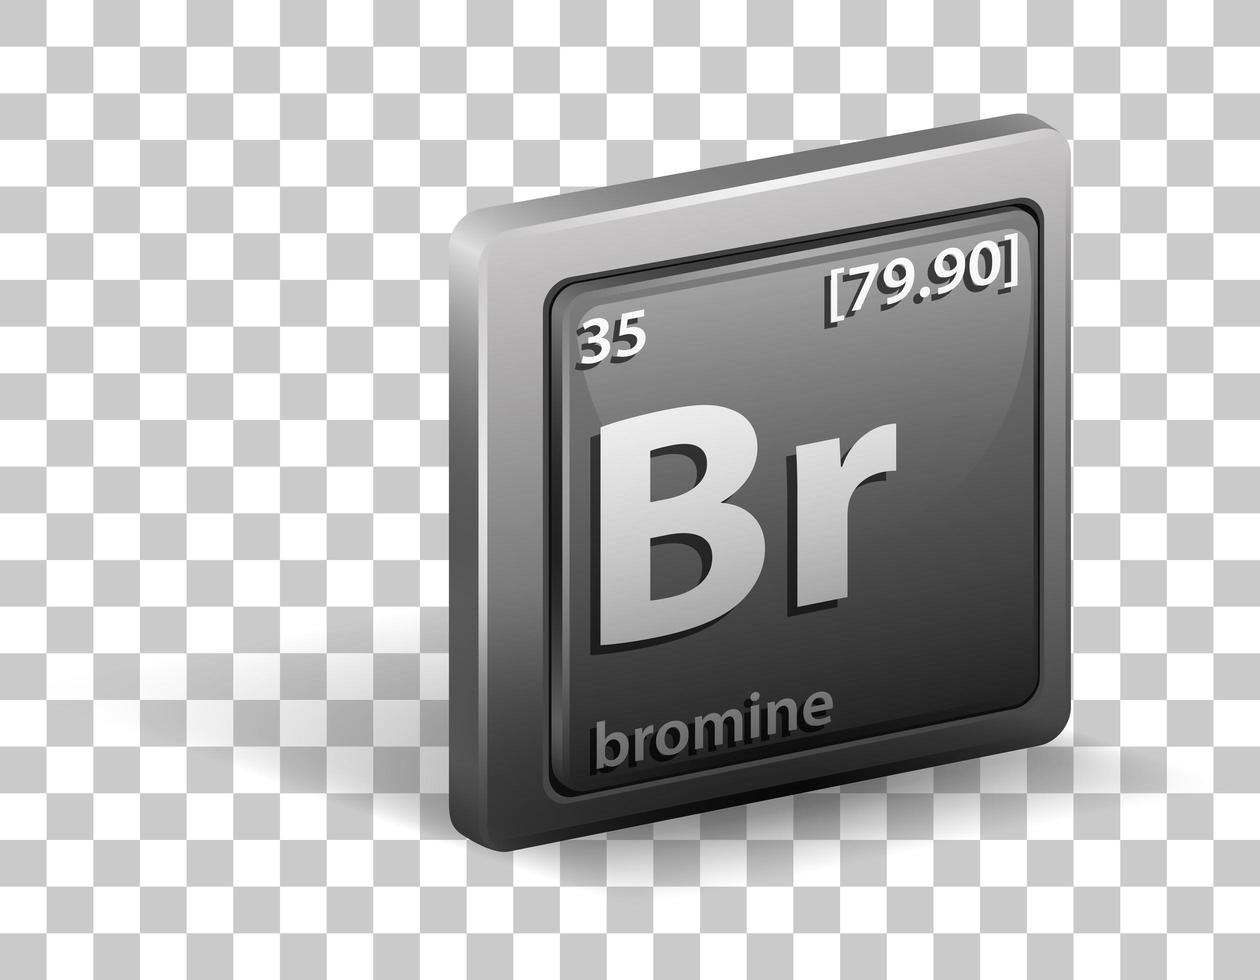 elemento químico bromo. símbolo químico com número atômico e massa atômica. vetor